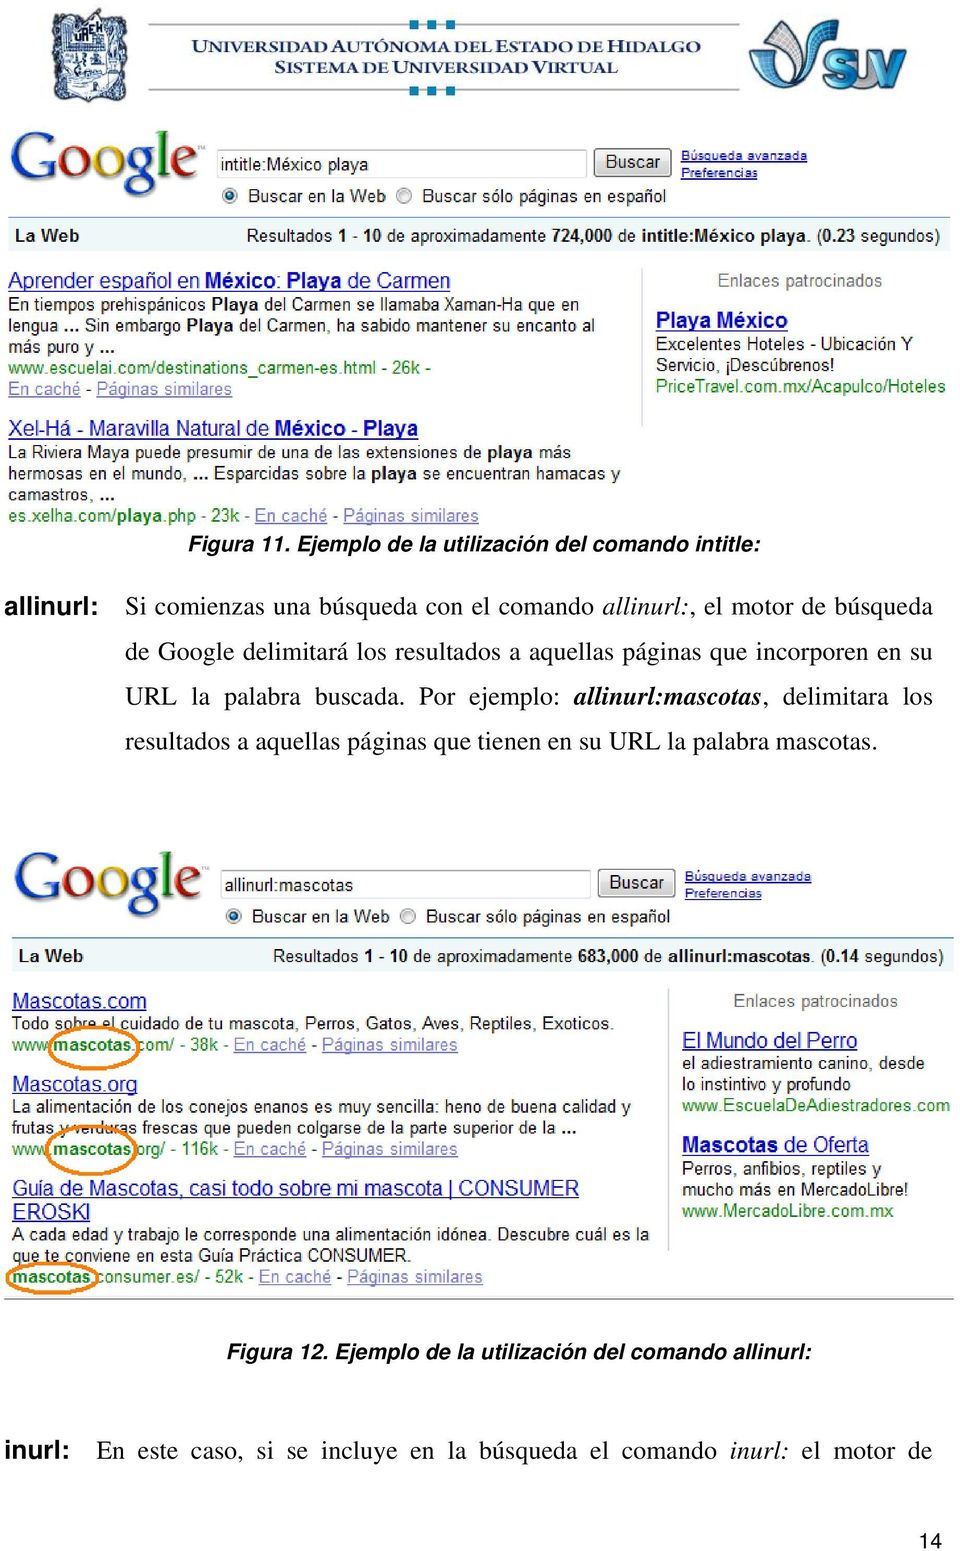 búsqueda de Google delimitará los resultados a aquellas páginas que incorporen en su URL la palabra buscada.